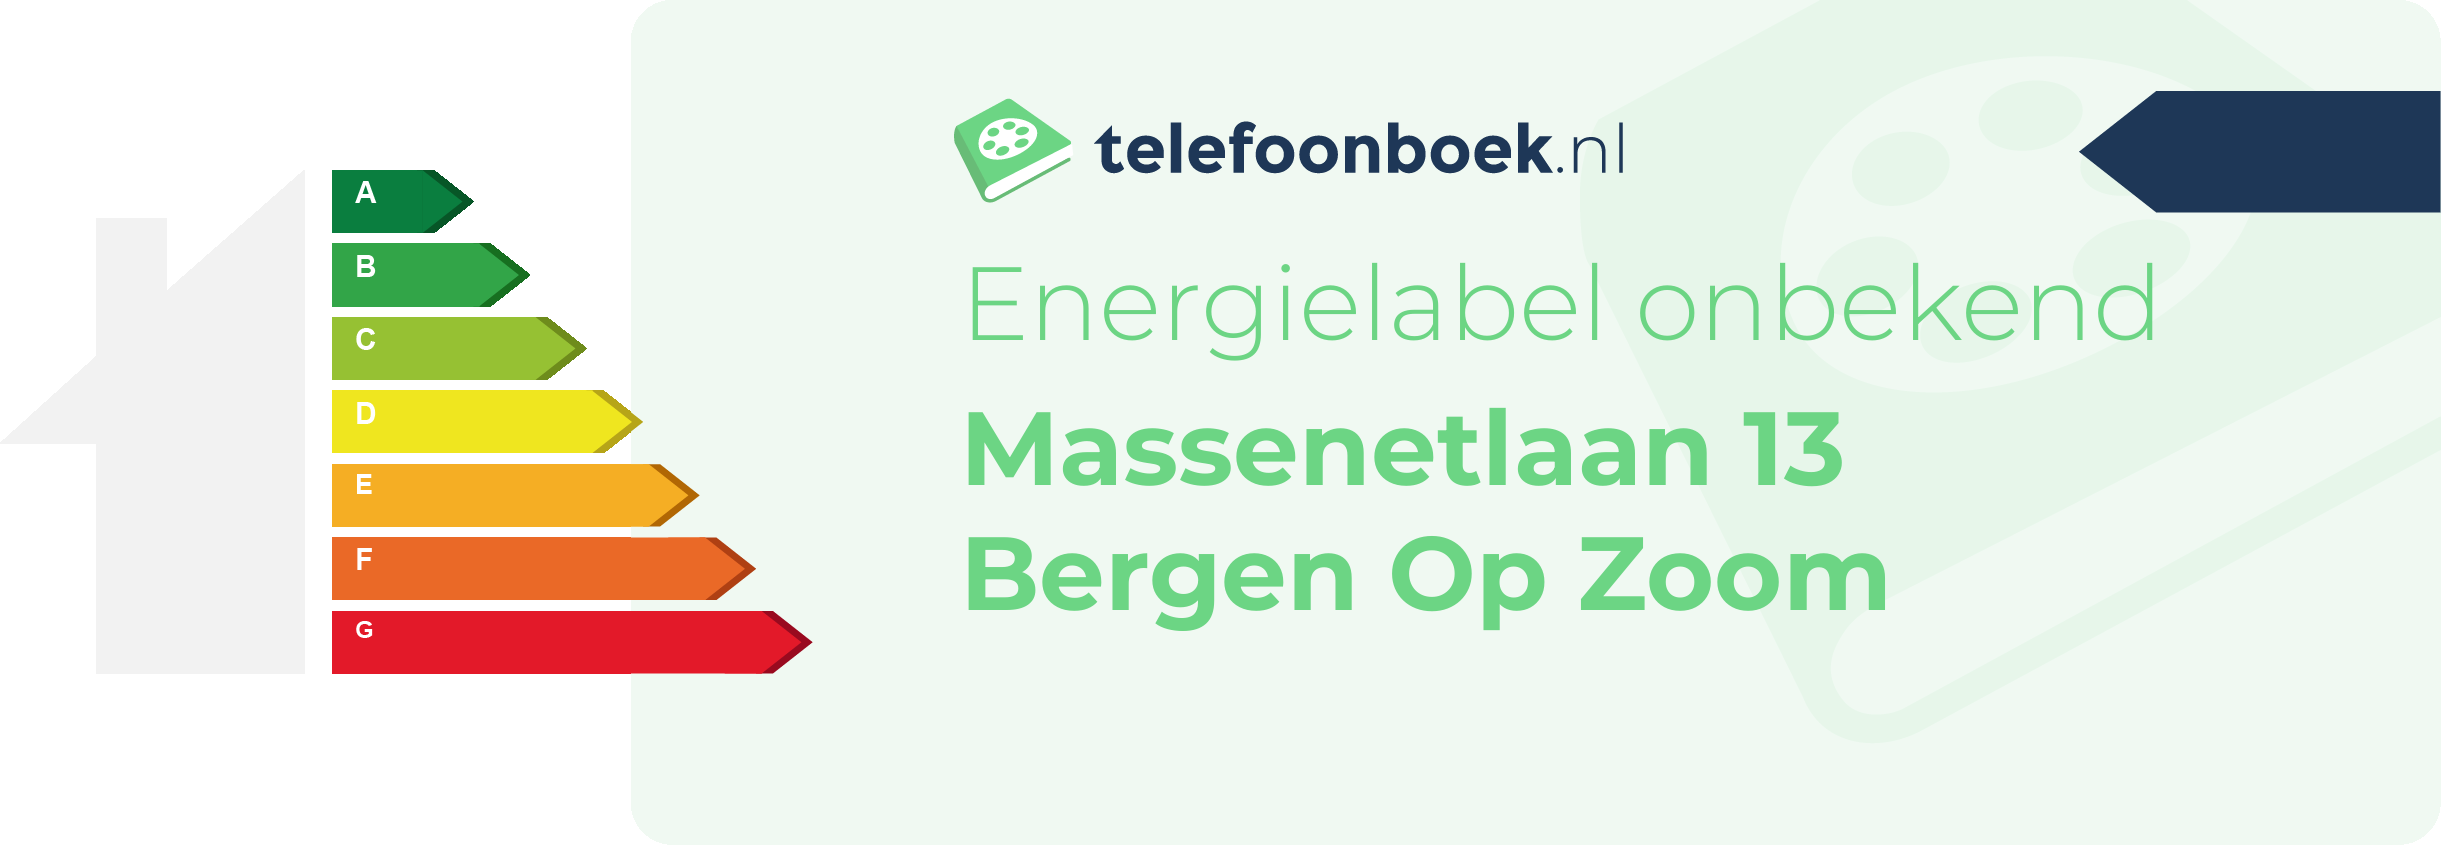 Energielabel Massenetlaan 13 Bergen Op Zoom